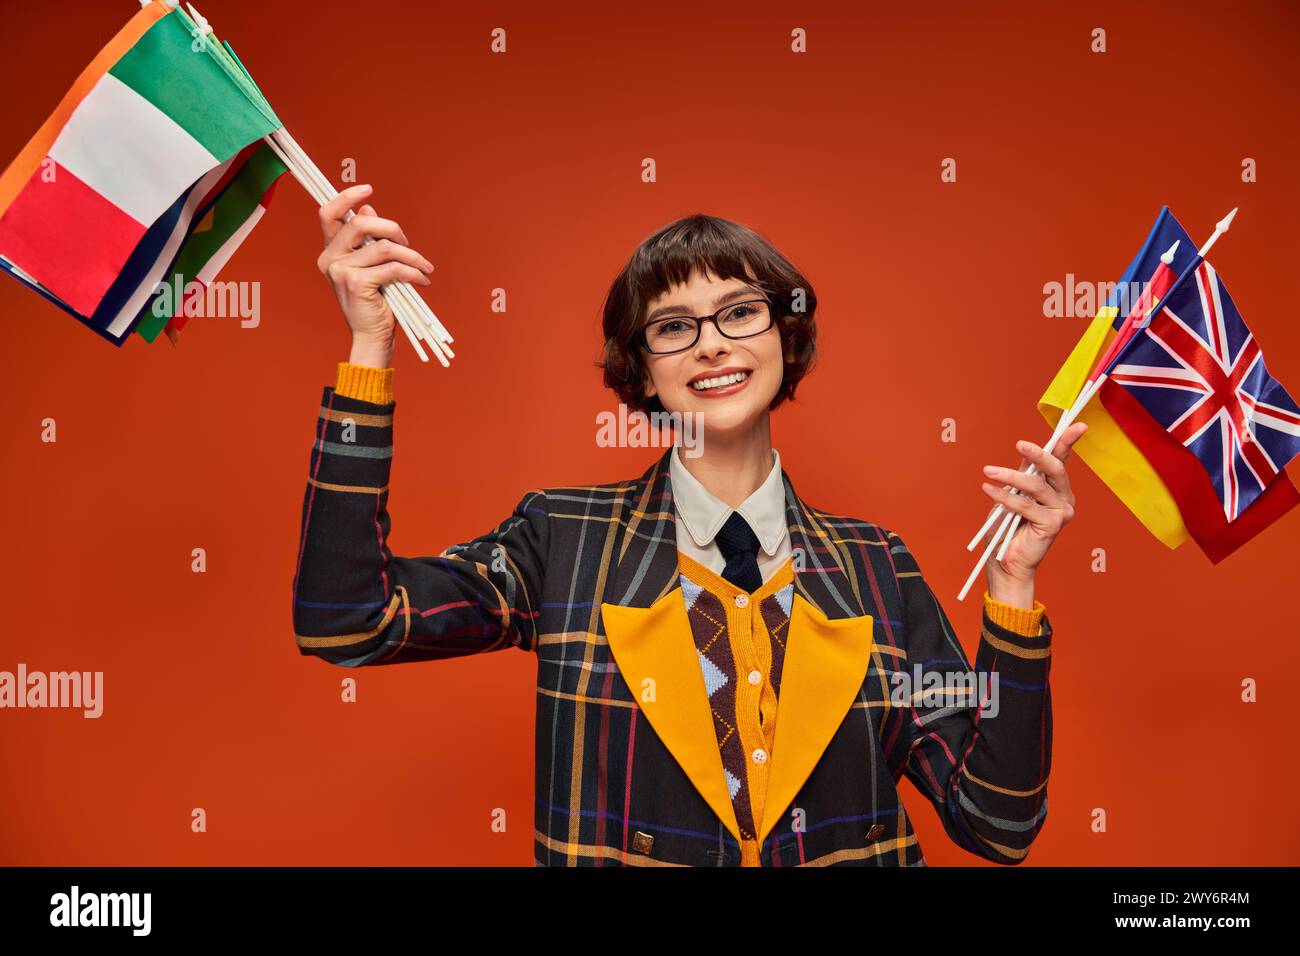 ragazza studentessa felice con l'uniforme e gli occhiali che reggono bandiere multiple e in piedi sullo sfondo arancione Foto Stock